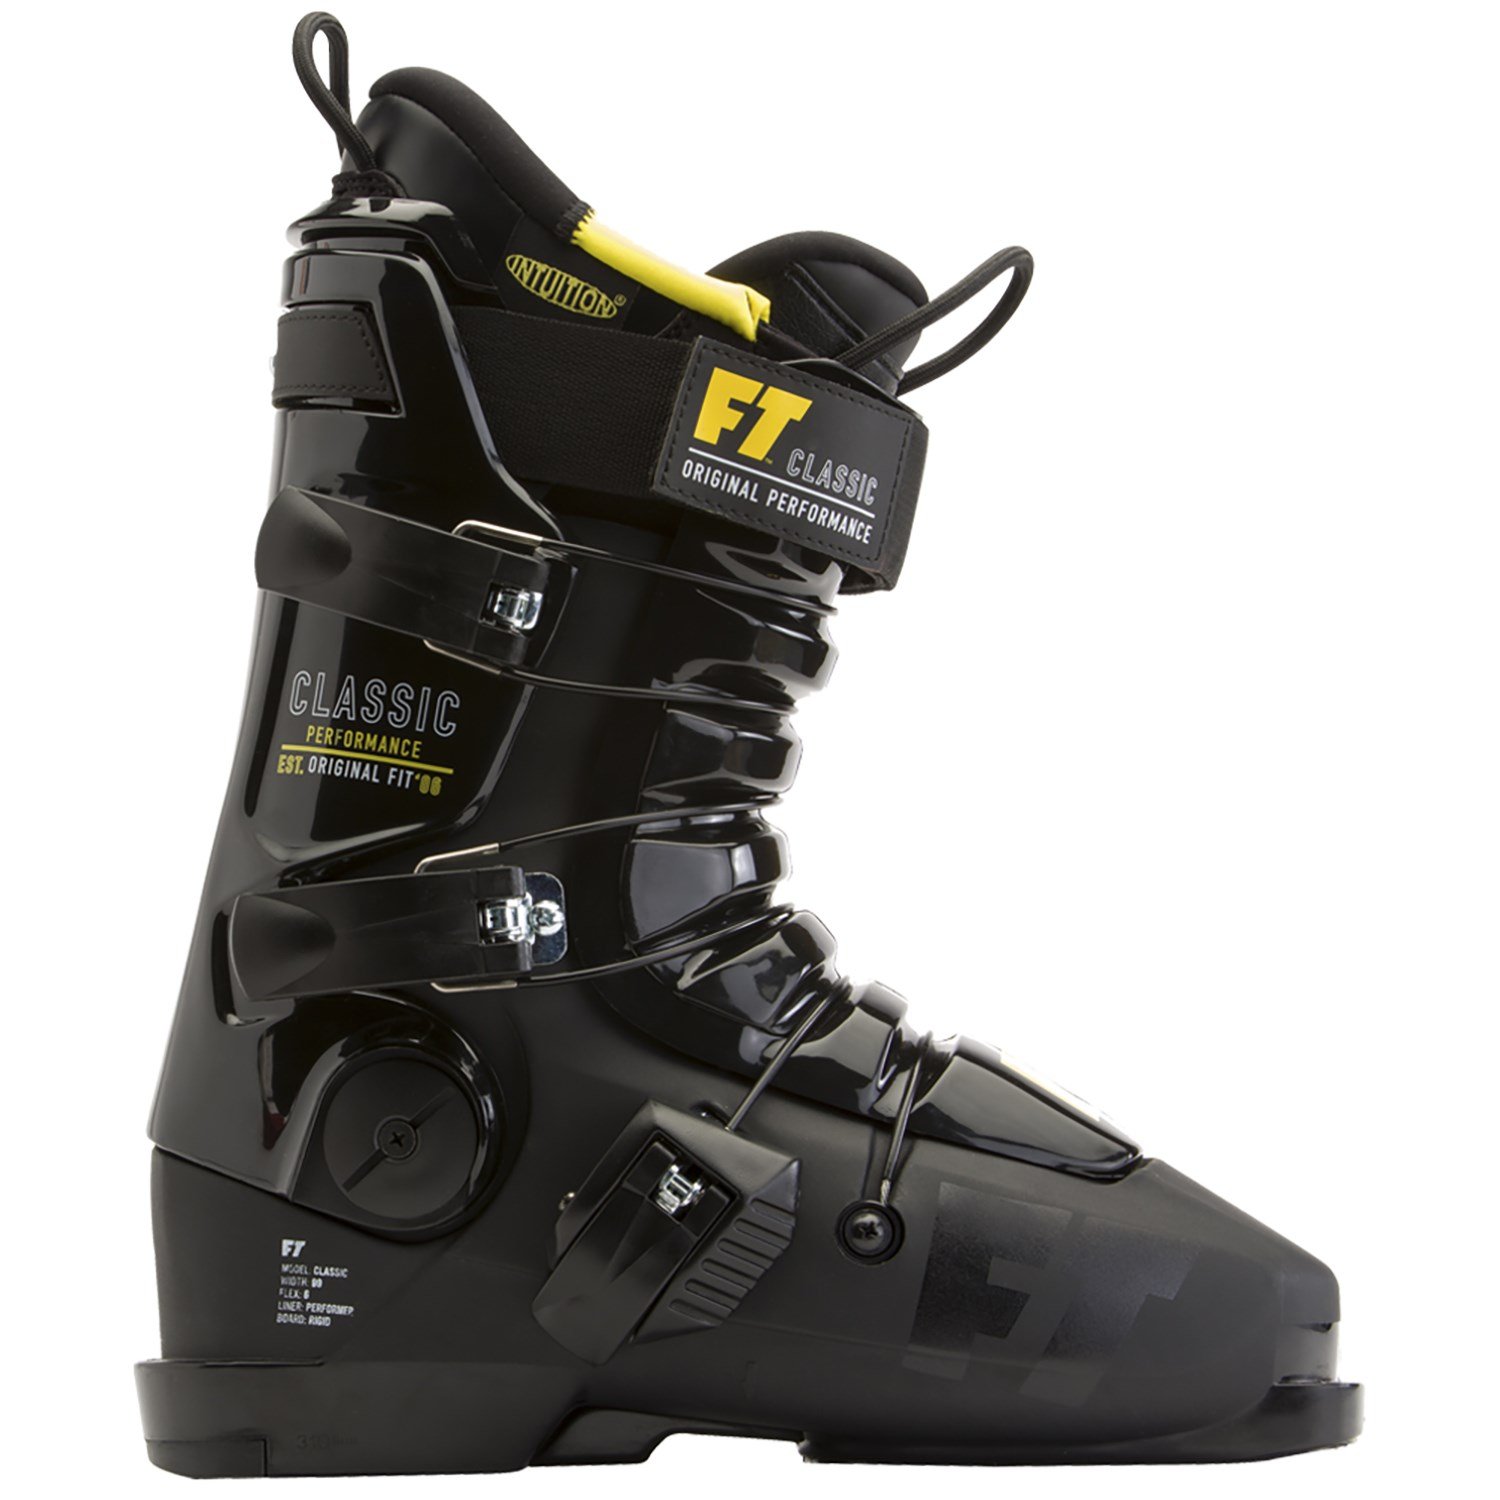 https://images.evo.com/imgp/zoom/95196/406249/full-tilt-classic-ski-boots-2016-.jpg